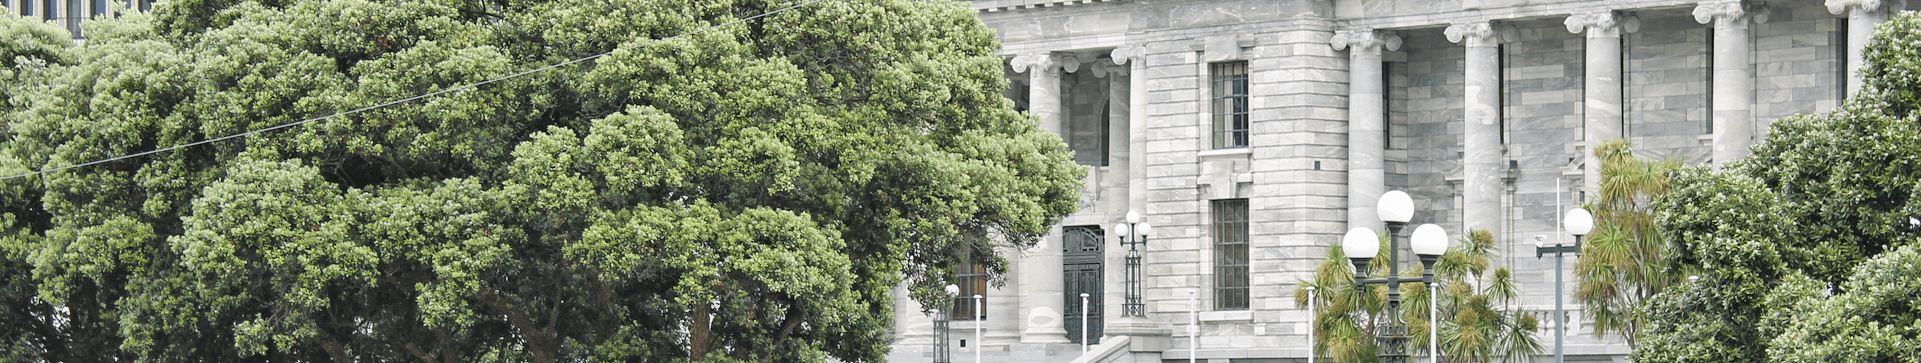 New Zealand's Parliament buildings, Wellington